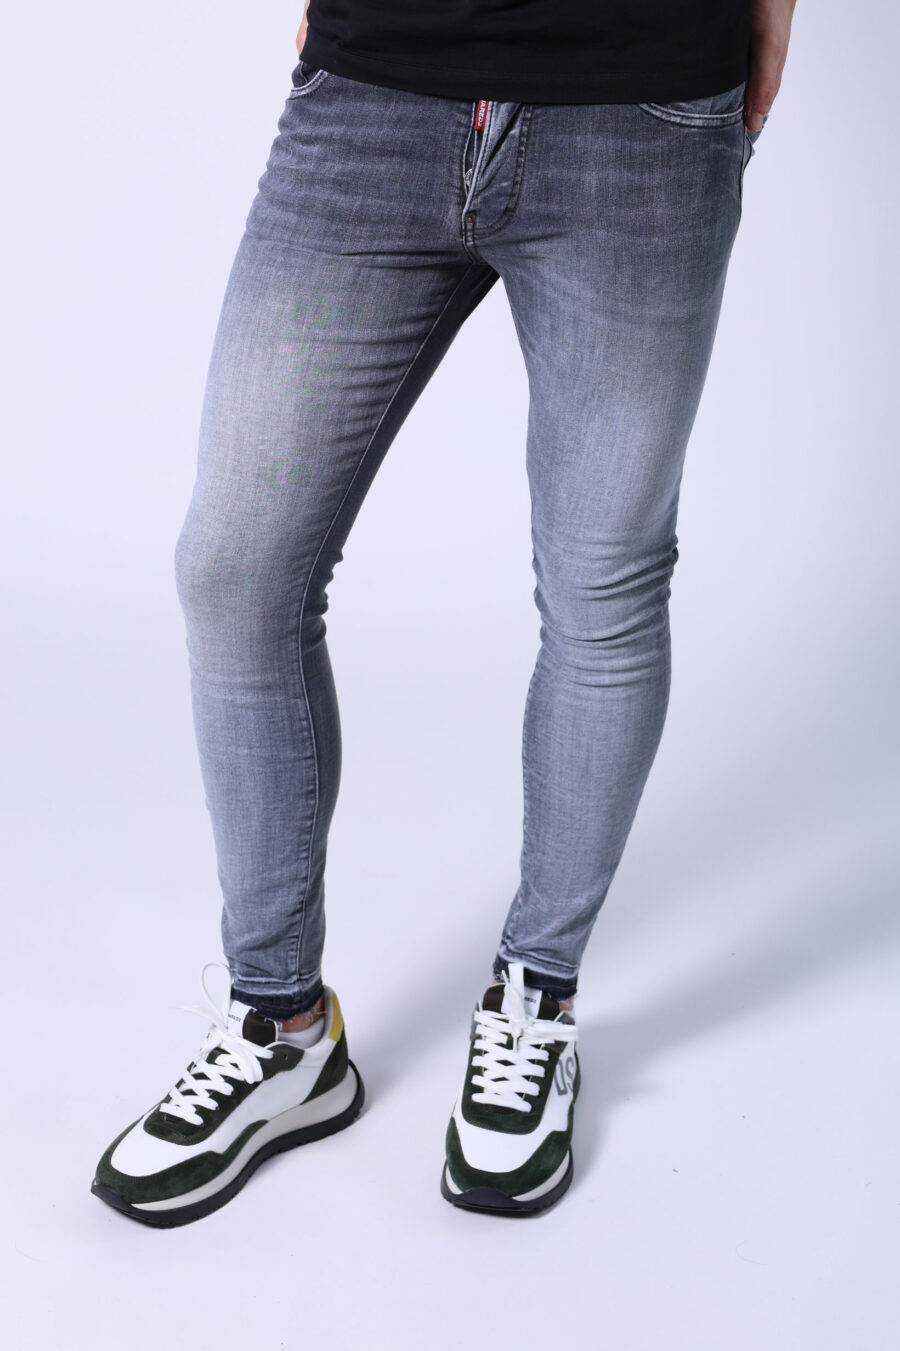 Jeans "skater jean" gris usé - Untitled Catalog 05640 1